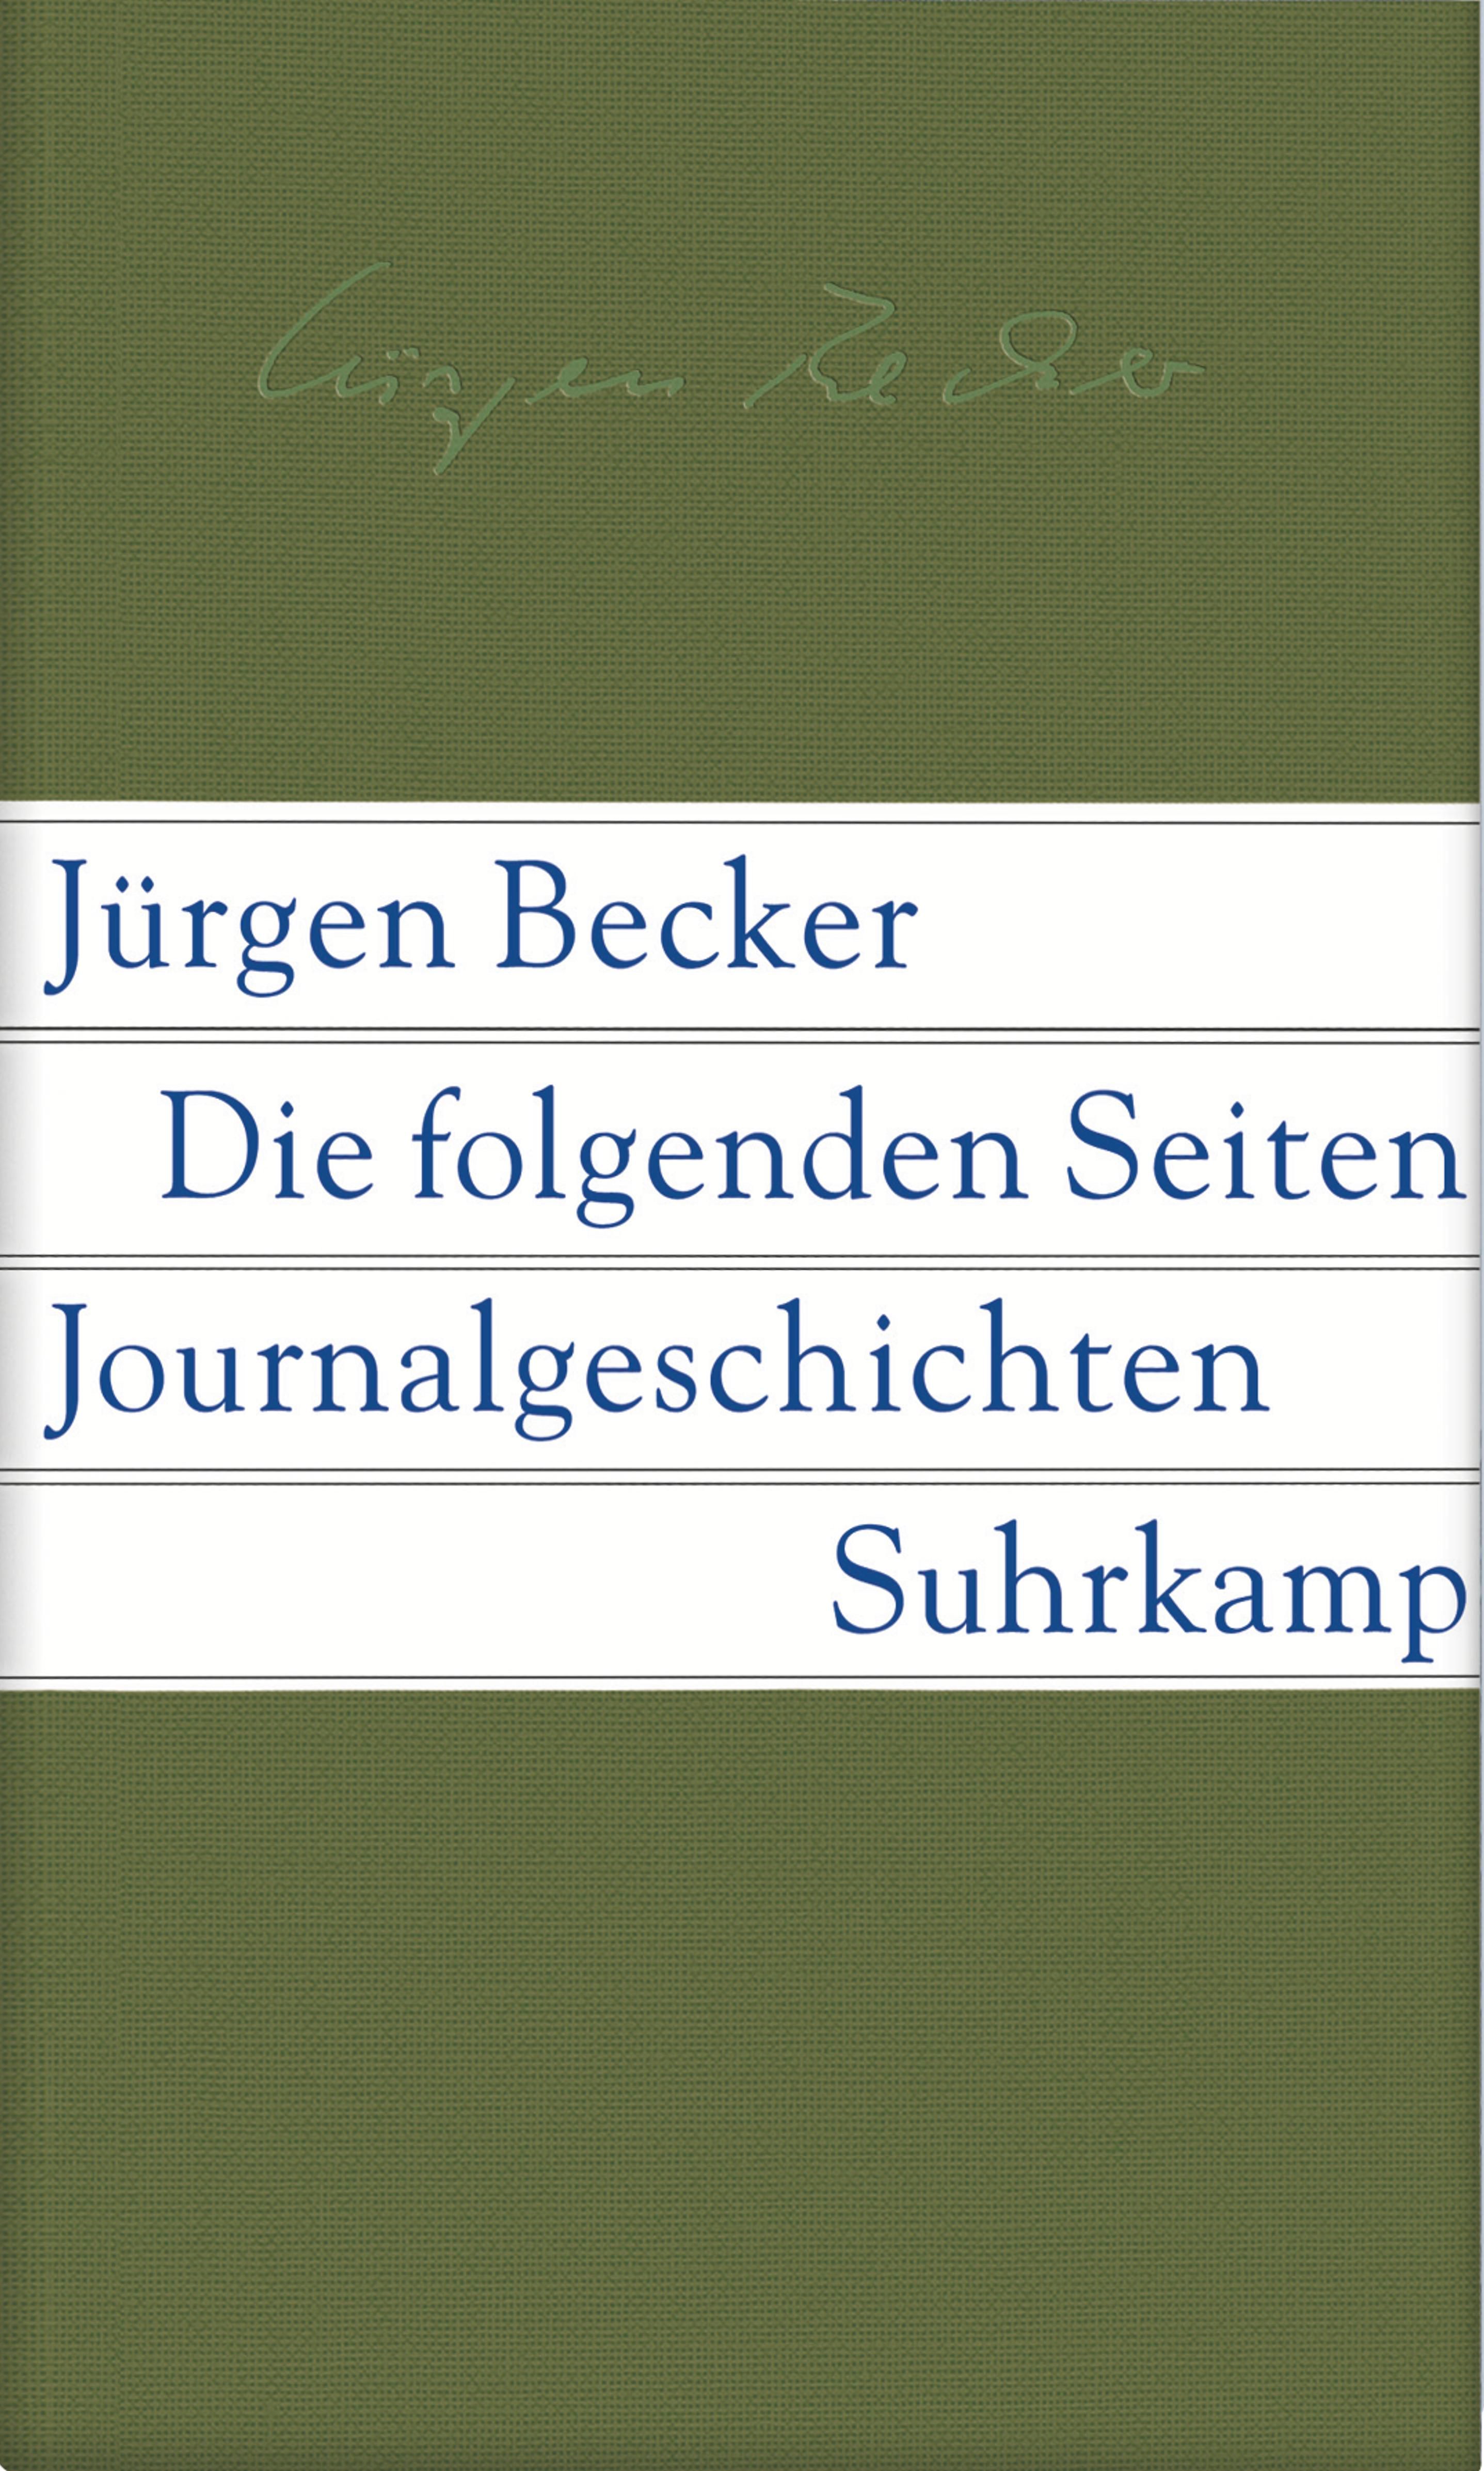 Jürgen Becker: The Following Pages (Die folgenden Seiten